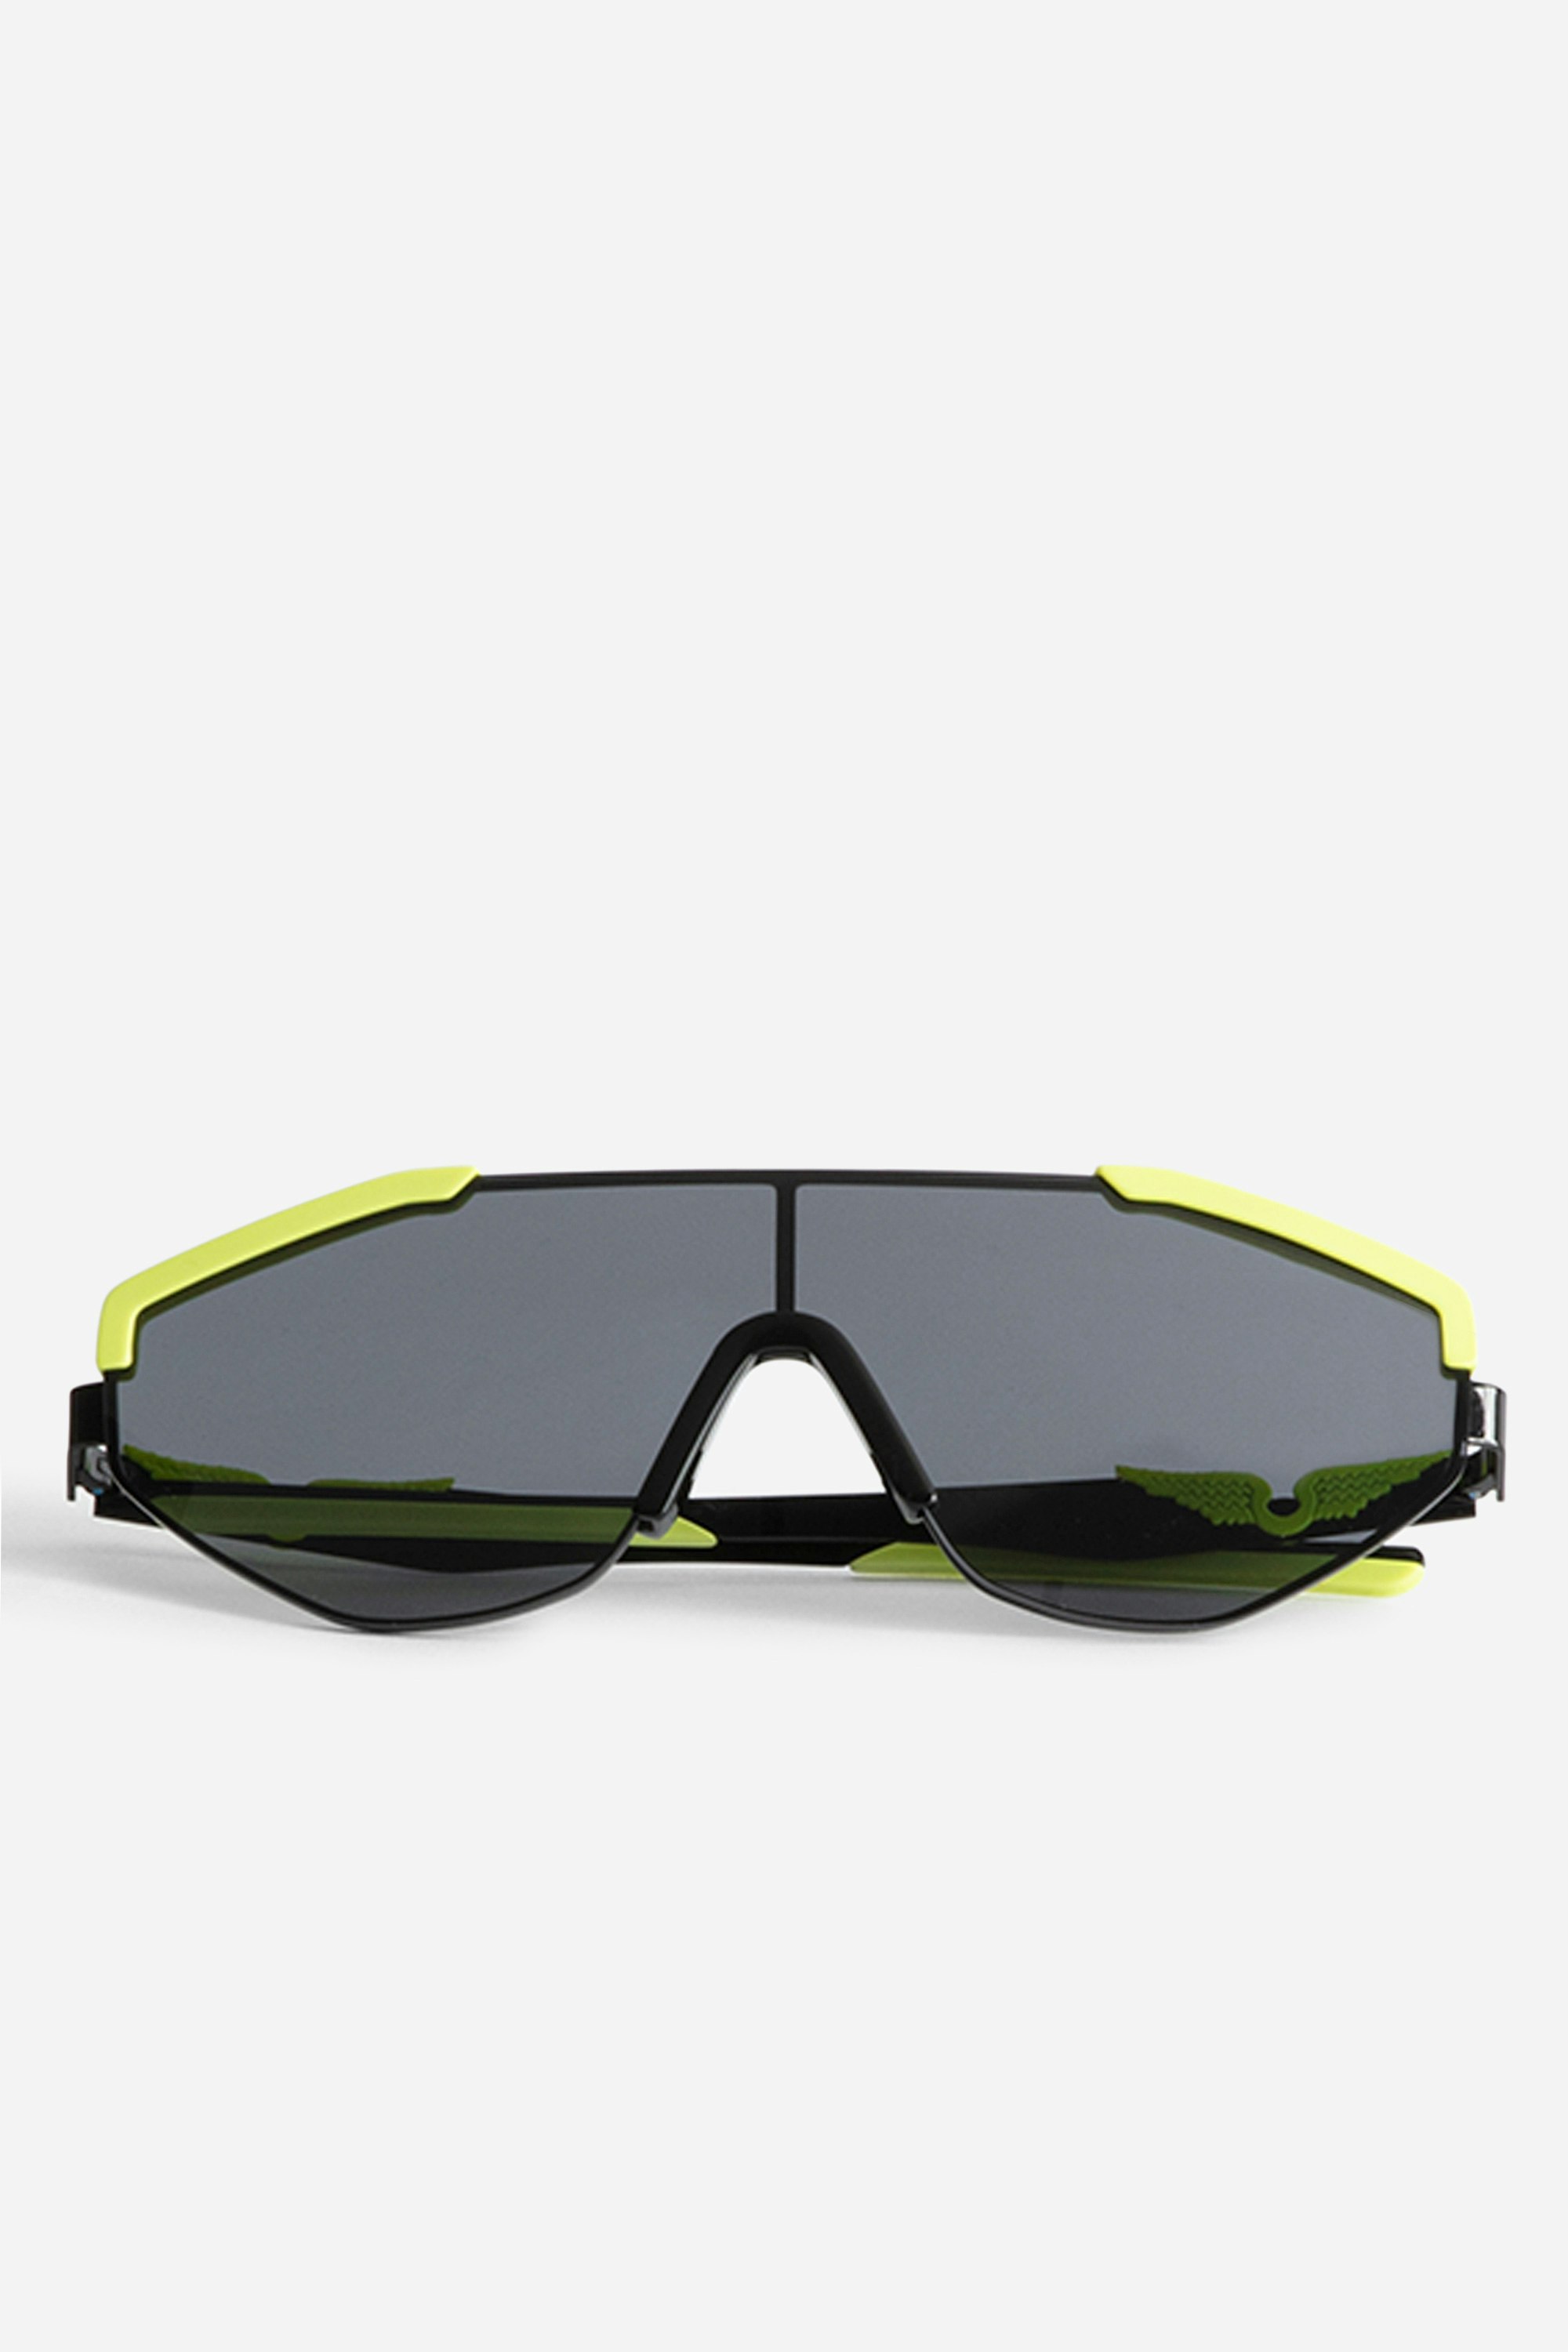 Gafas de Sol ZV23H9 Fashion Show - Futuristas gafas de sol del desfile OI23 con las emblemáticas alas de la casa en las patillas.